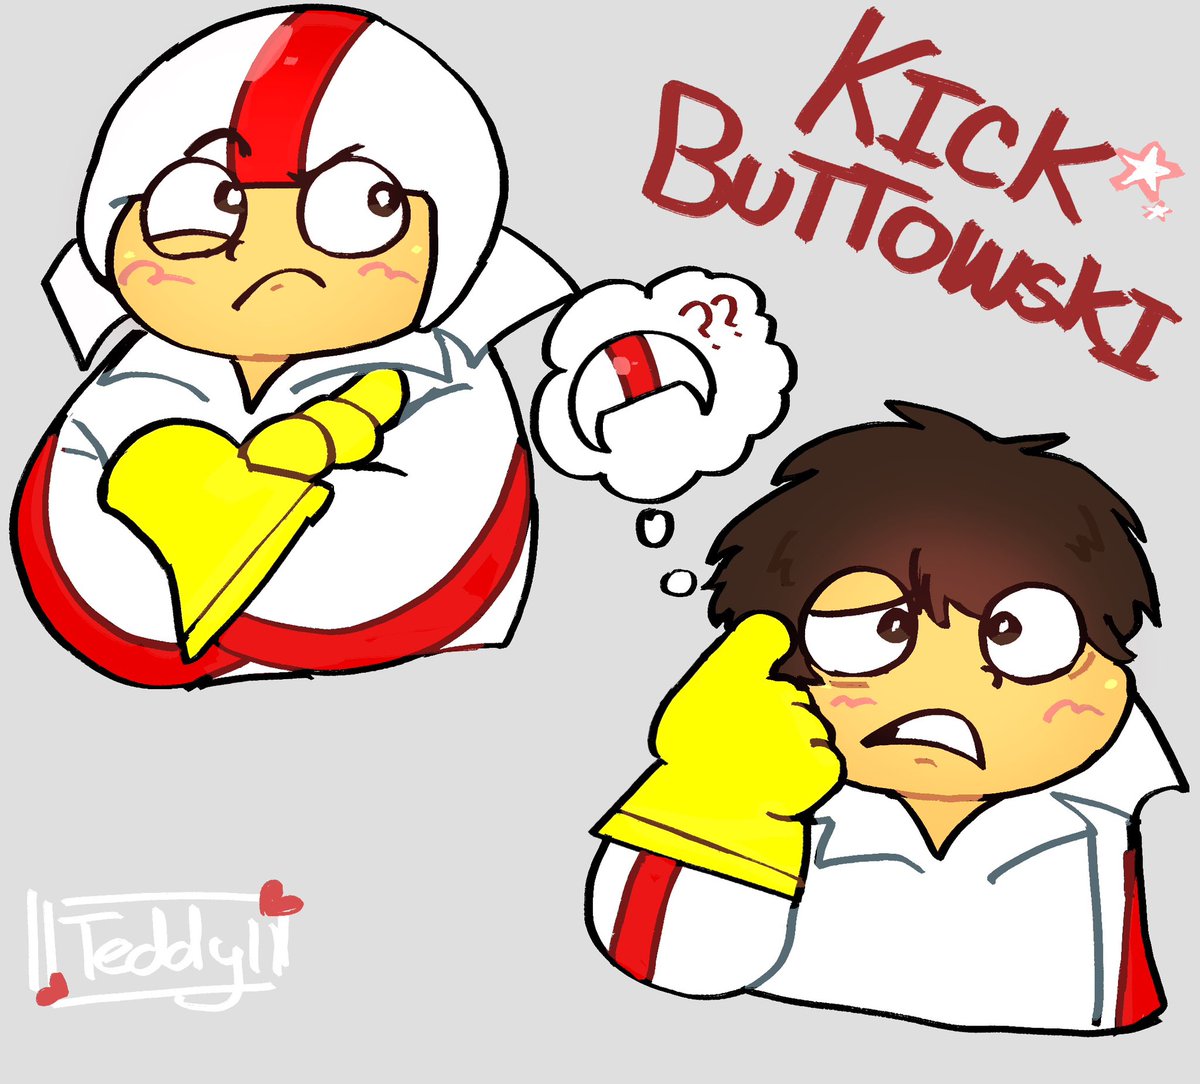 kick #kickbuttowski